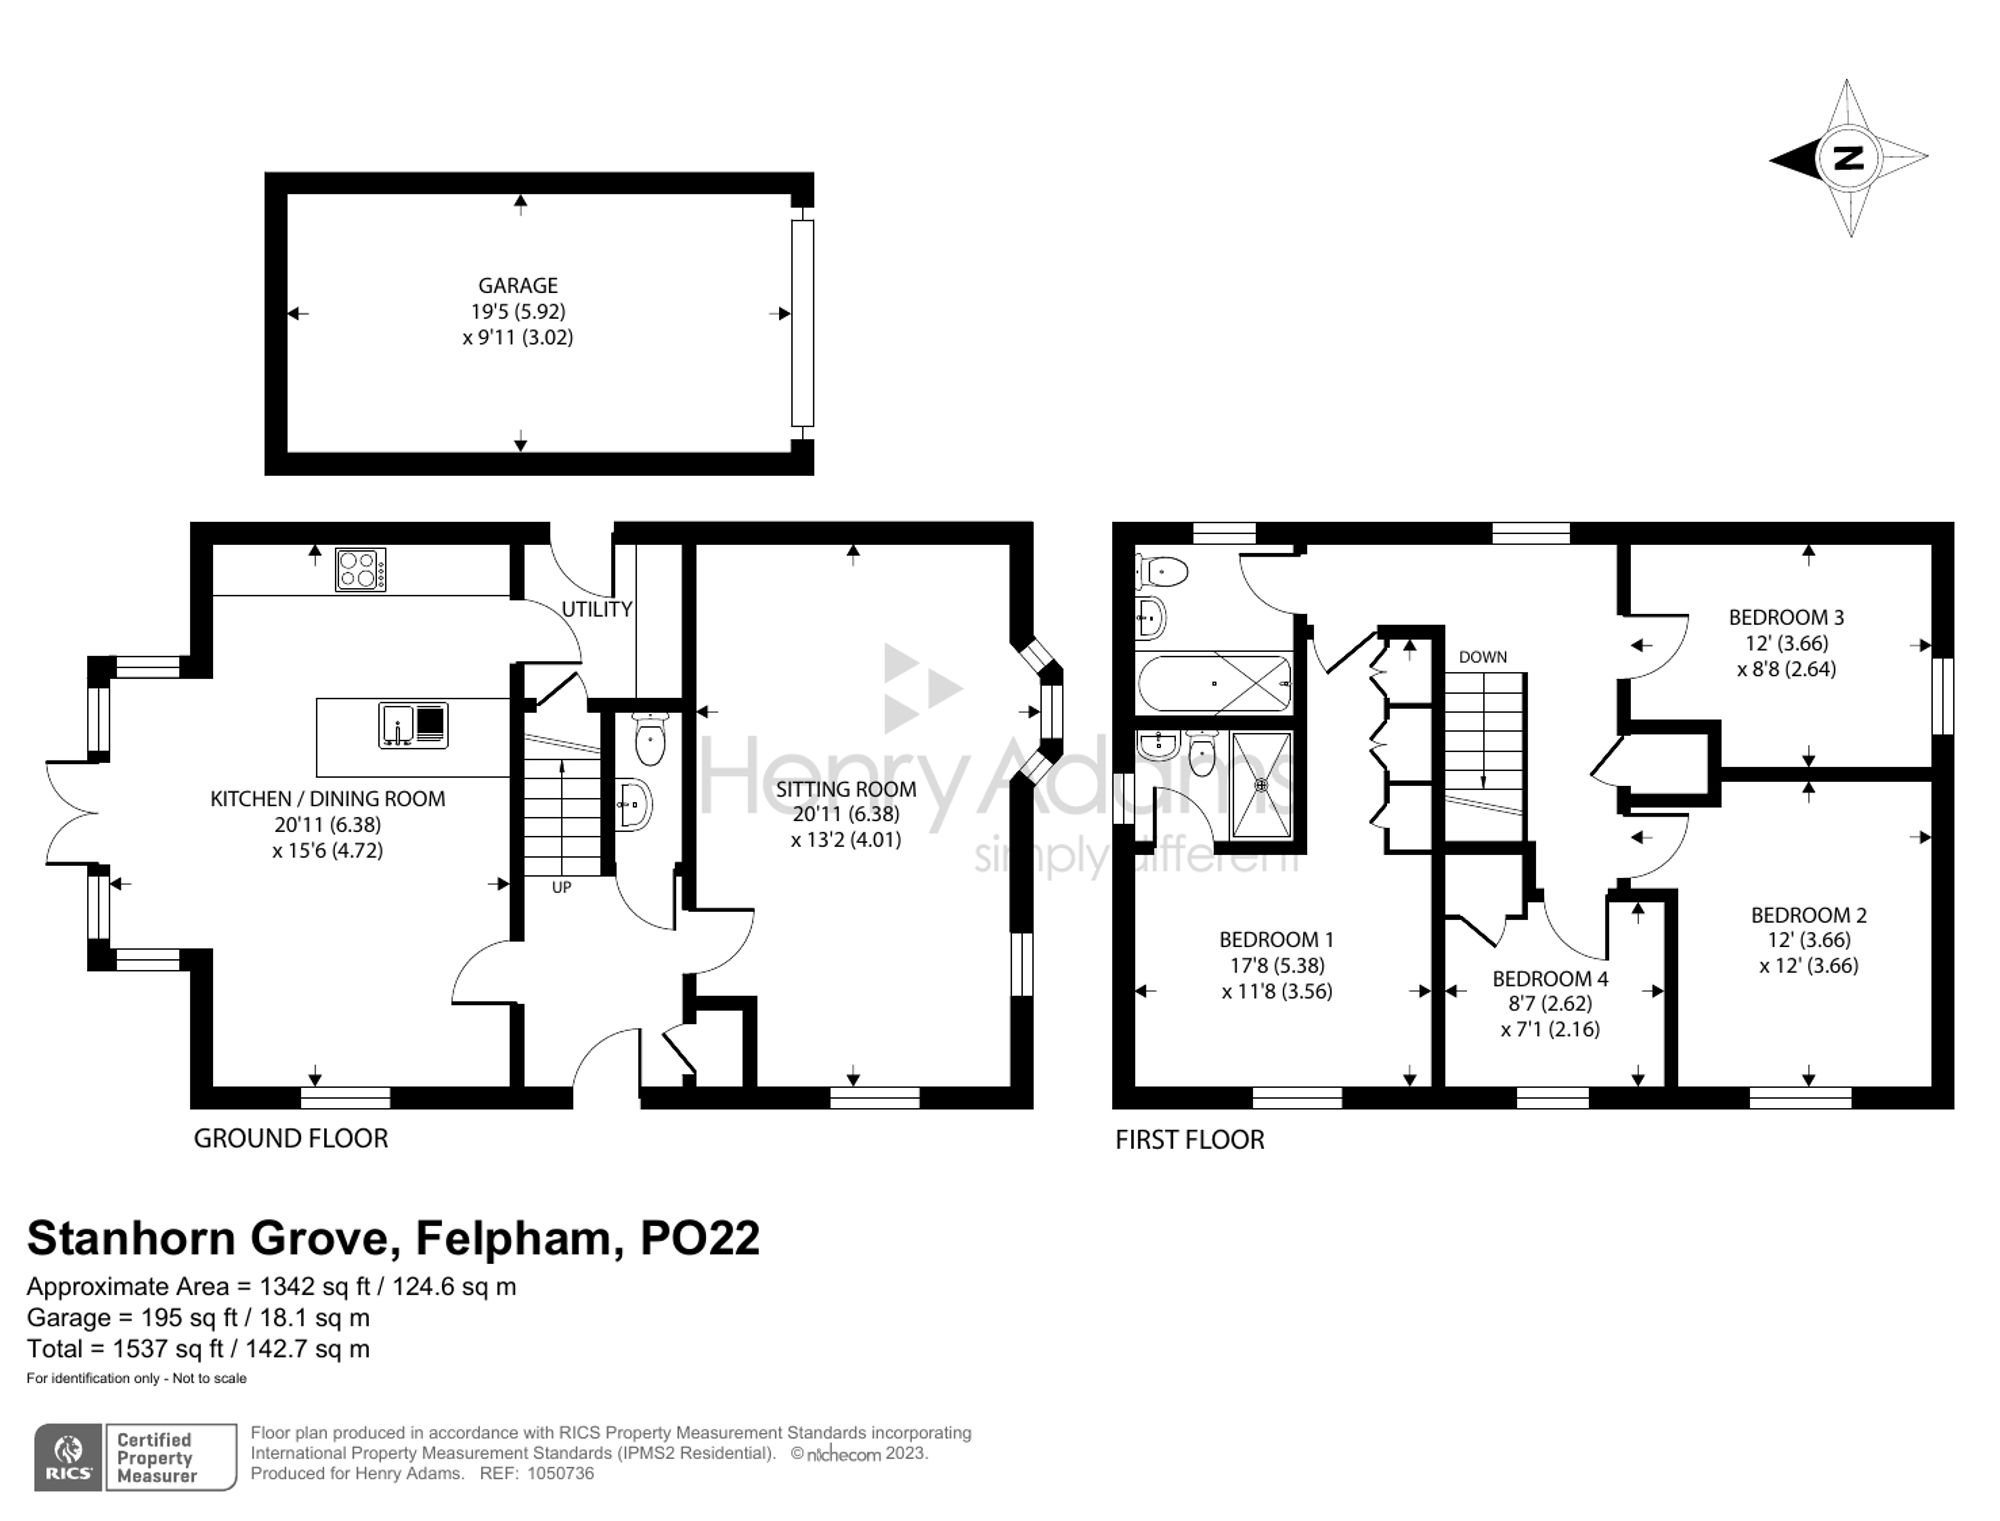 Stanhorn Grove, Felpham, PO22 floorplans